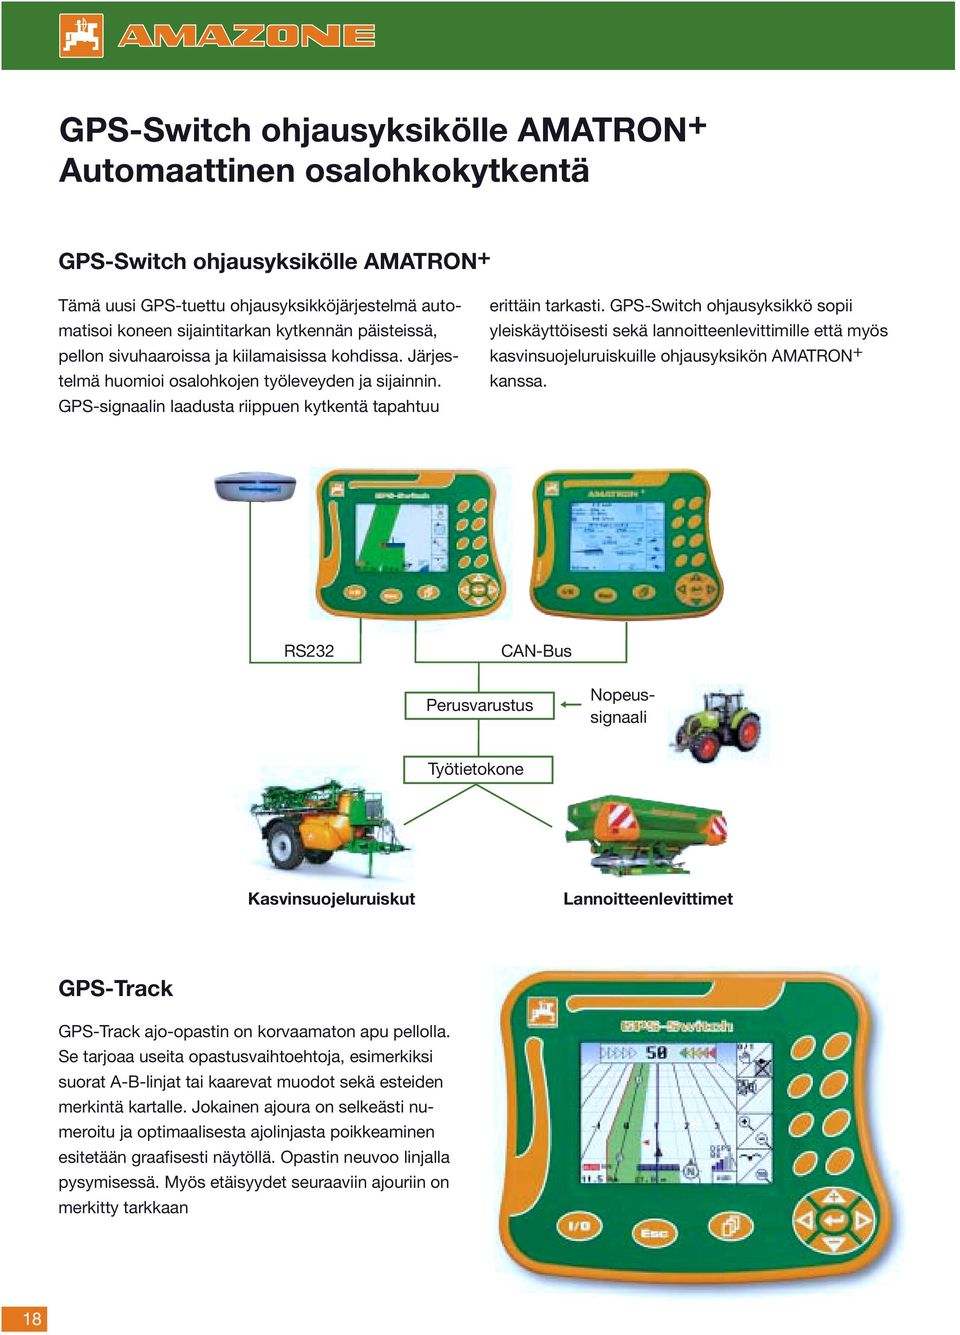 GPS-Switch ohjausyksikkö sopii yleiskäyttöisesti sekä lannoitteenlevittimille että myös kasvinsuojeluruiskuille ohjausyksikön AMATRON + kanssa.